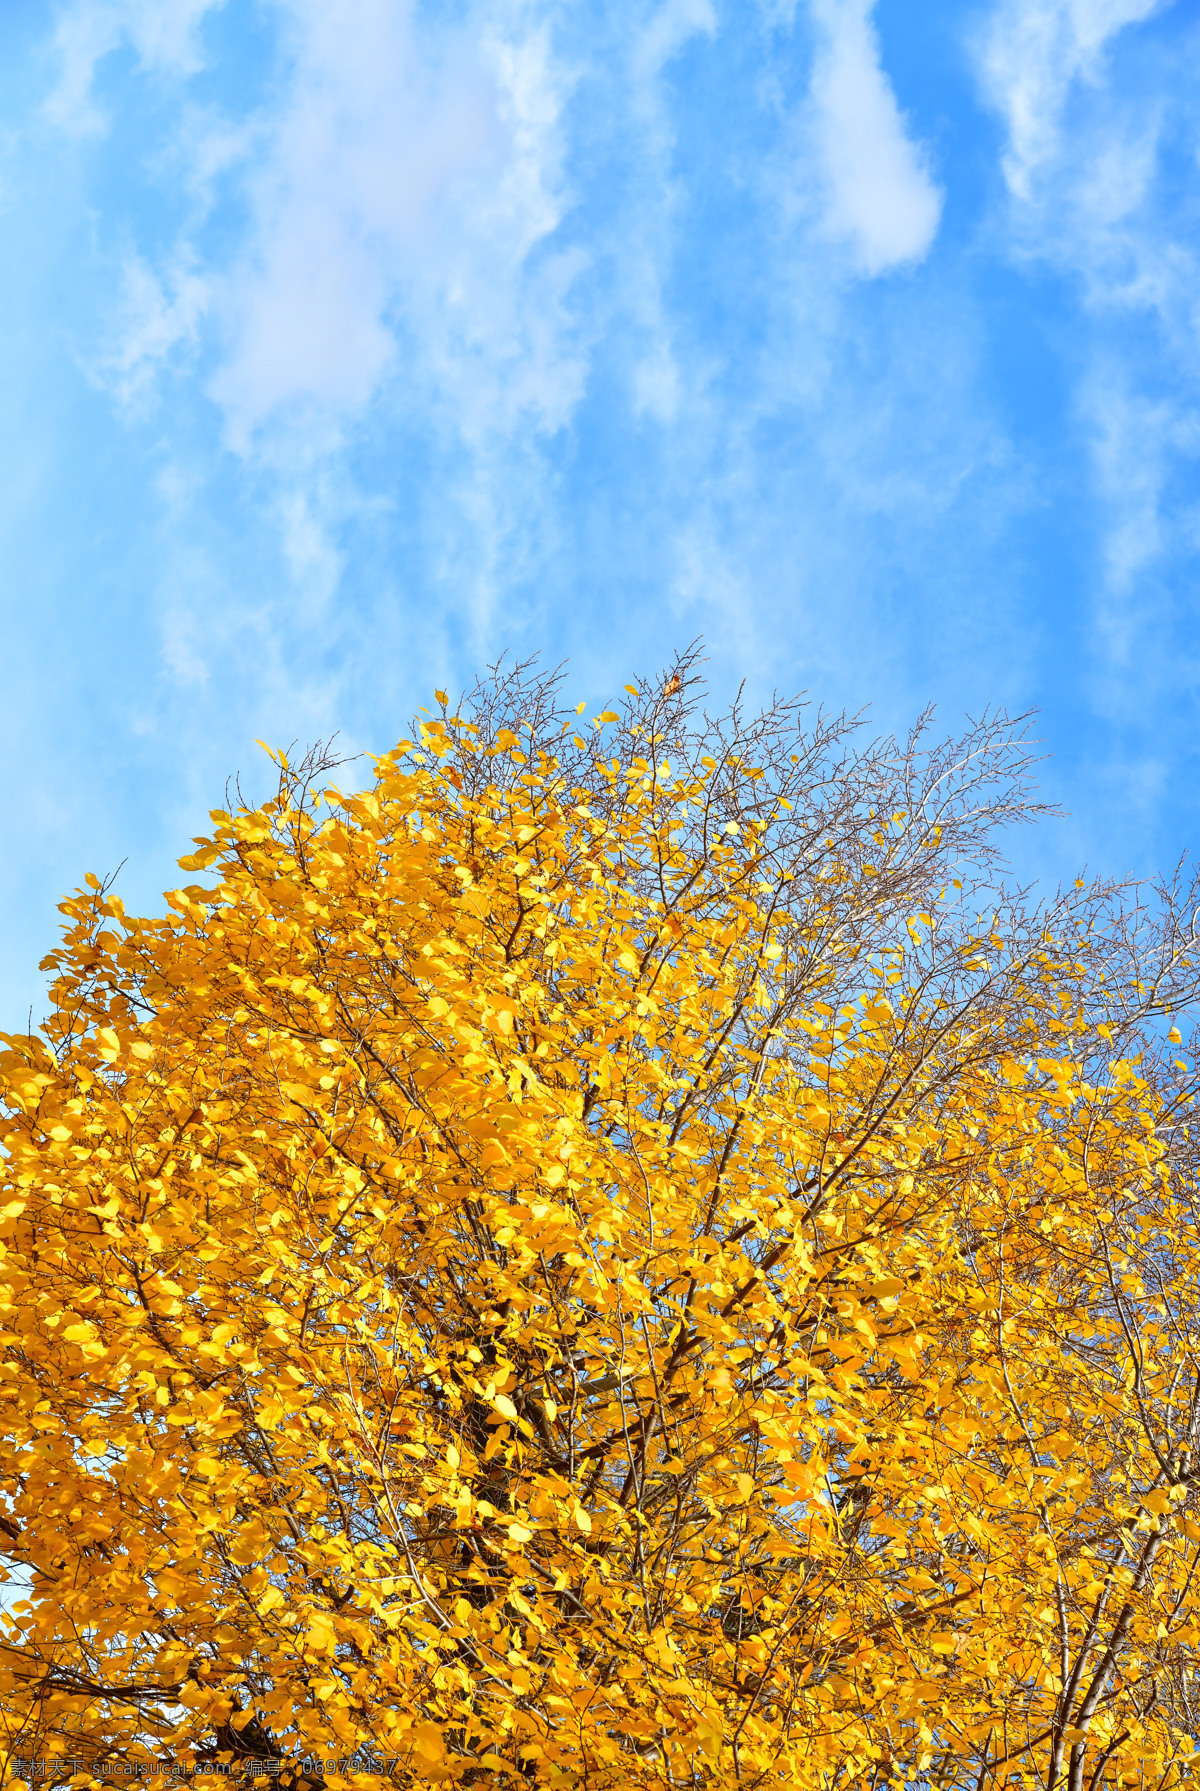 金黄色的树冠 大树 黄色 金光 树叶 树木 黄叶 落叶 秋天 秋季 七叶树 叶子 树枝 植物 凉爽 依靠 茂盛 繁茂 枝叶 茁壮 成长 遮挡 庇护 生物世界 树木树叶